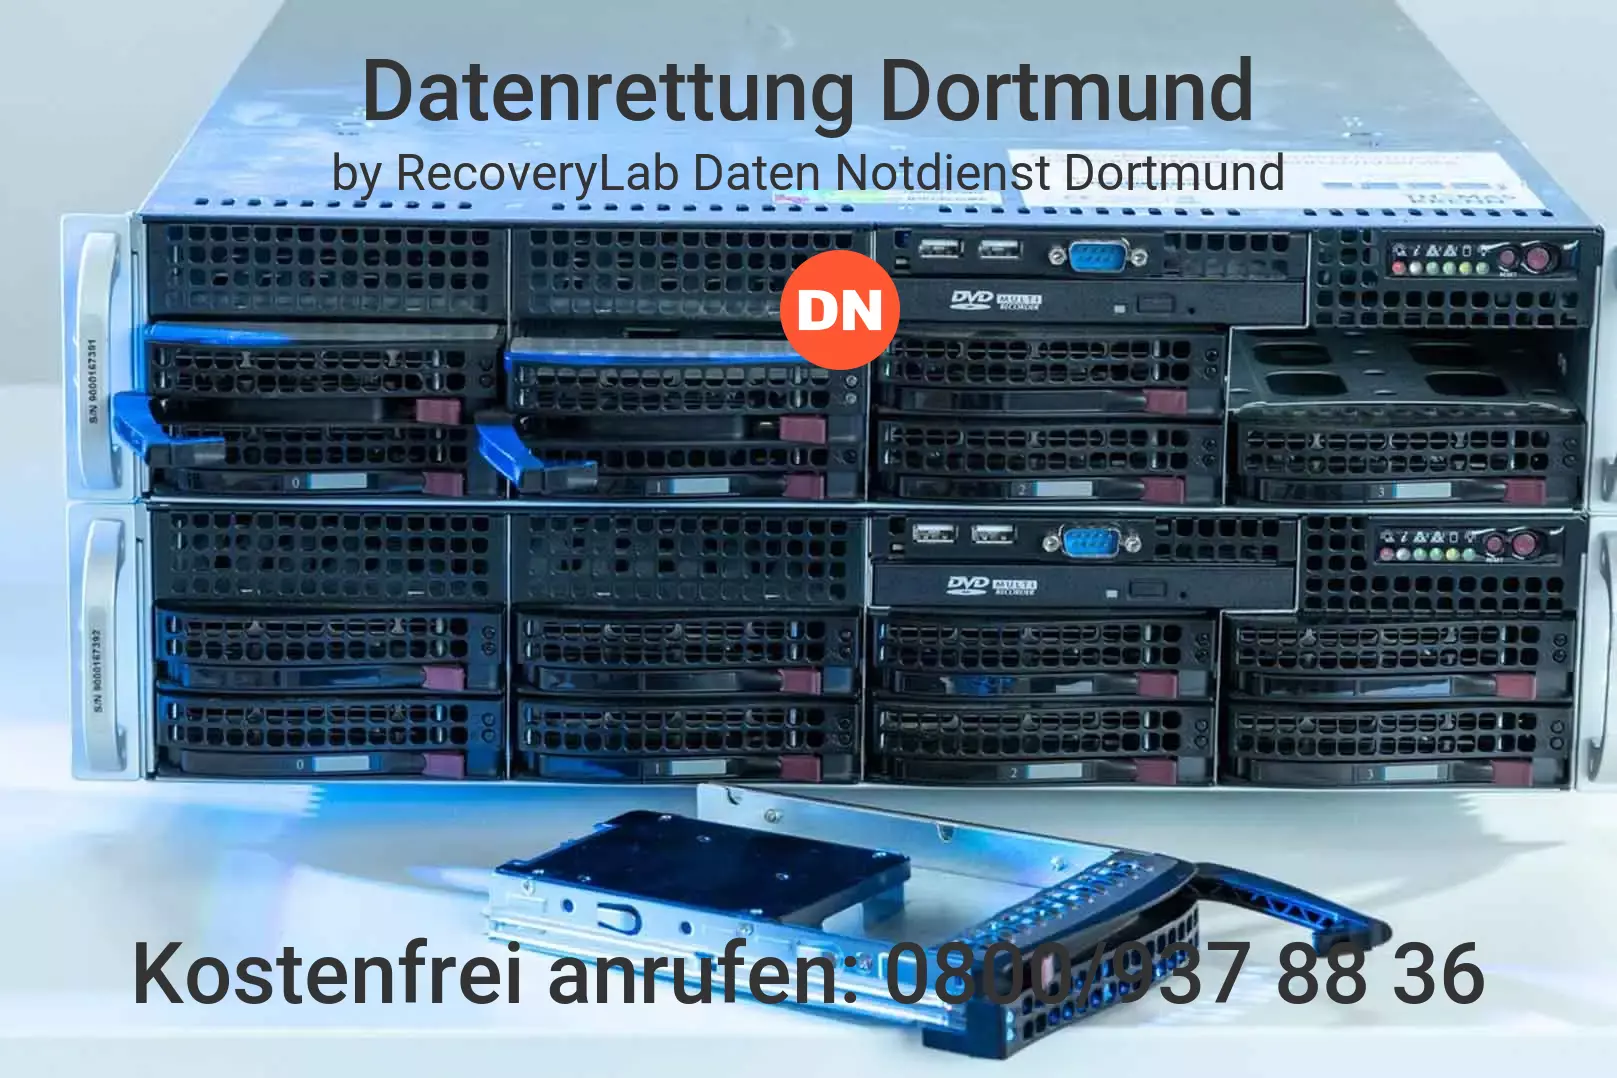 Fallstudie zu erfolgreicher Datenrettung RAID Dortmund